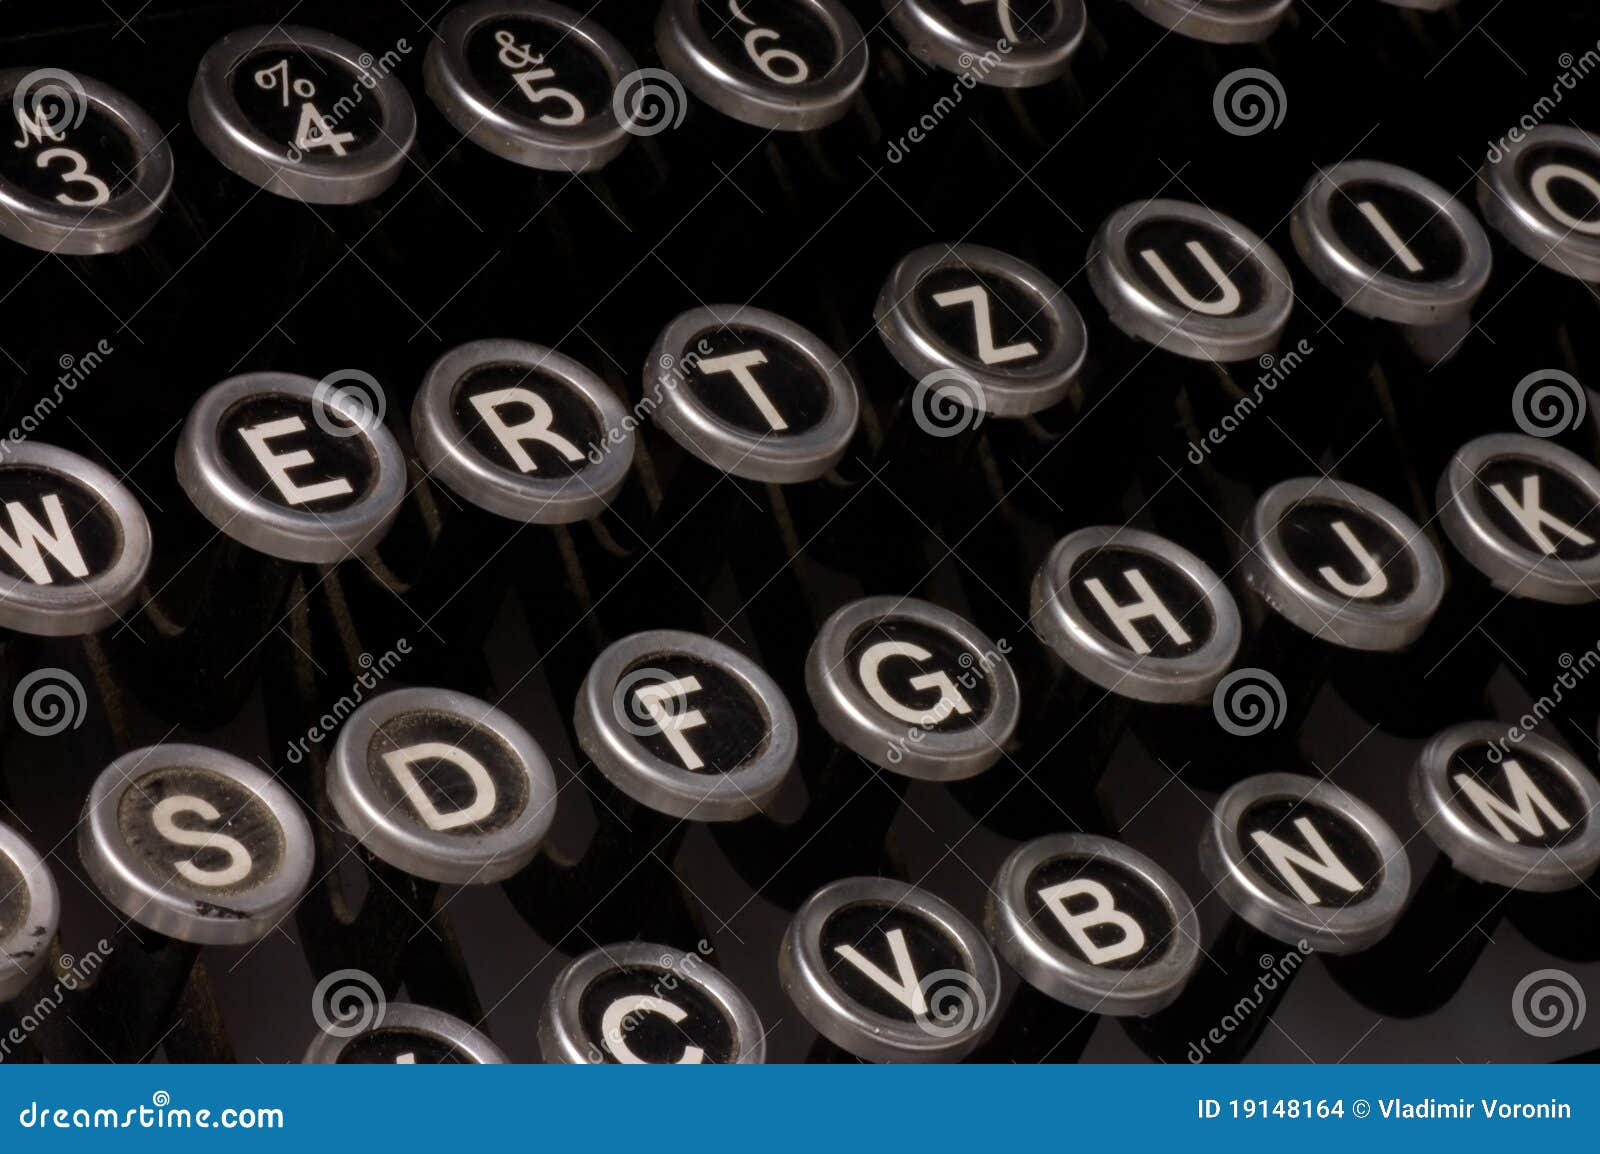 Zamkniętego ostatecznego terminu stary teksta maszyna do pisania stary